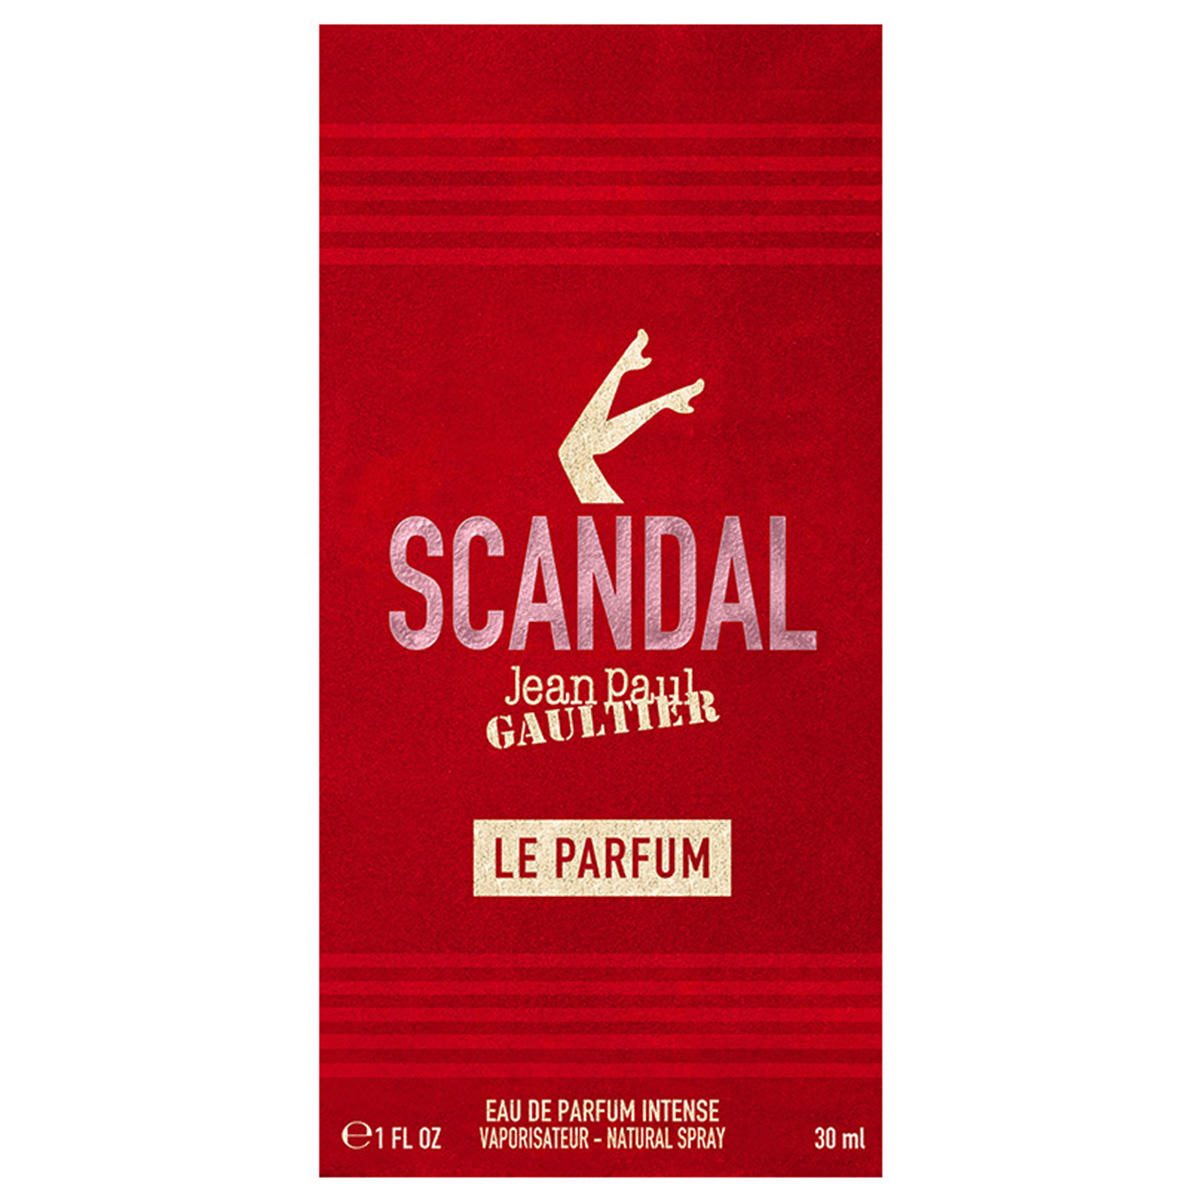 Jean Paul Gaultier Scandal Le Parfum Eau de Parfum Intense 30 ml - 2